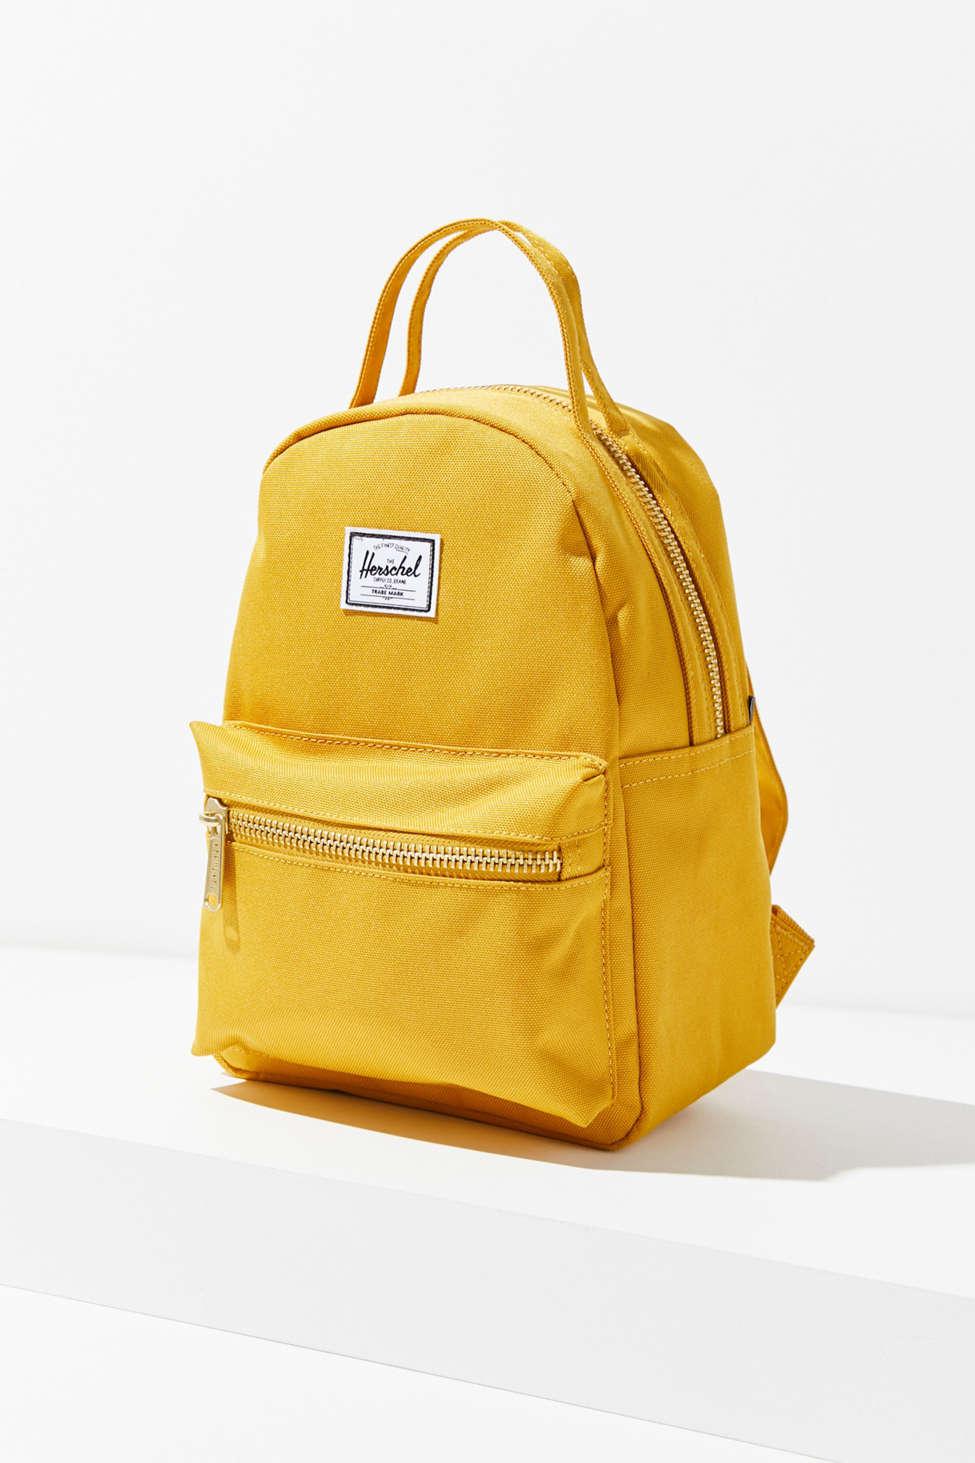 herschel nova mini mustard backpack factory 941a9 bb402